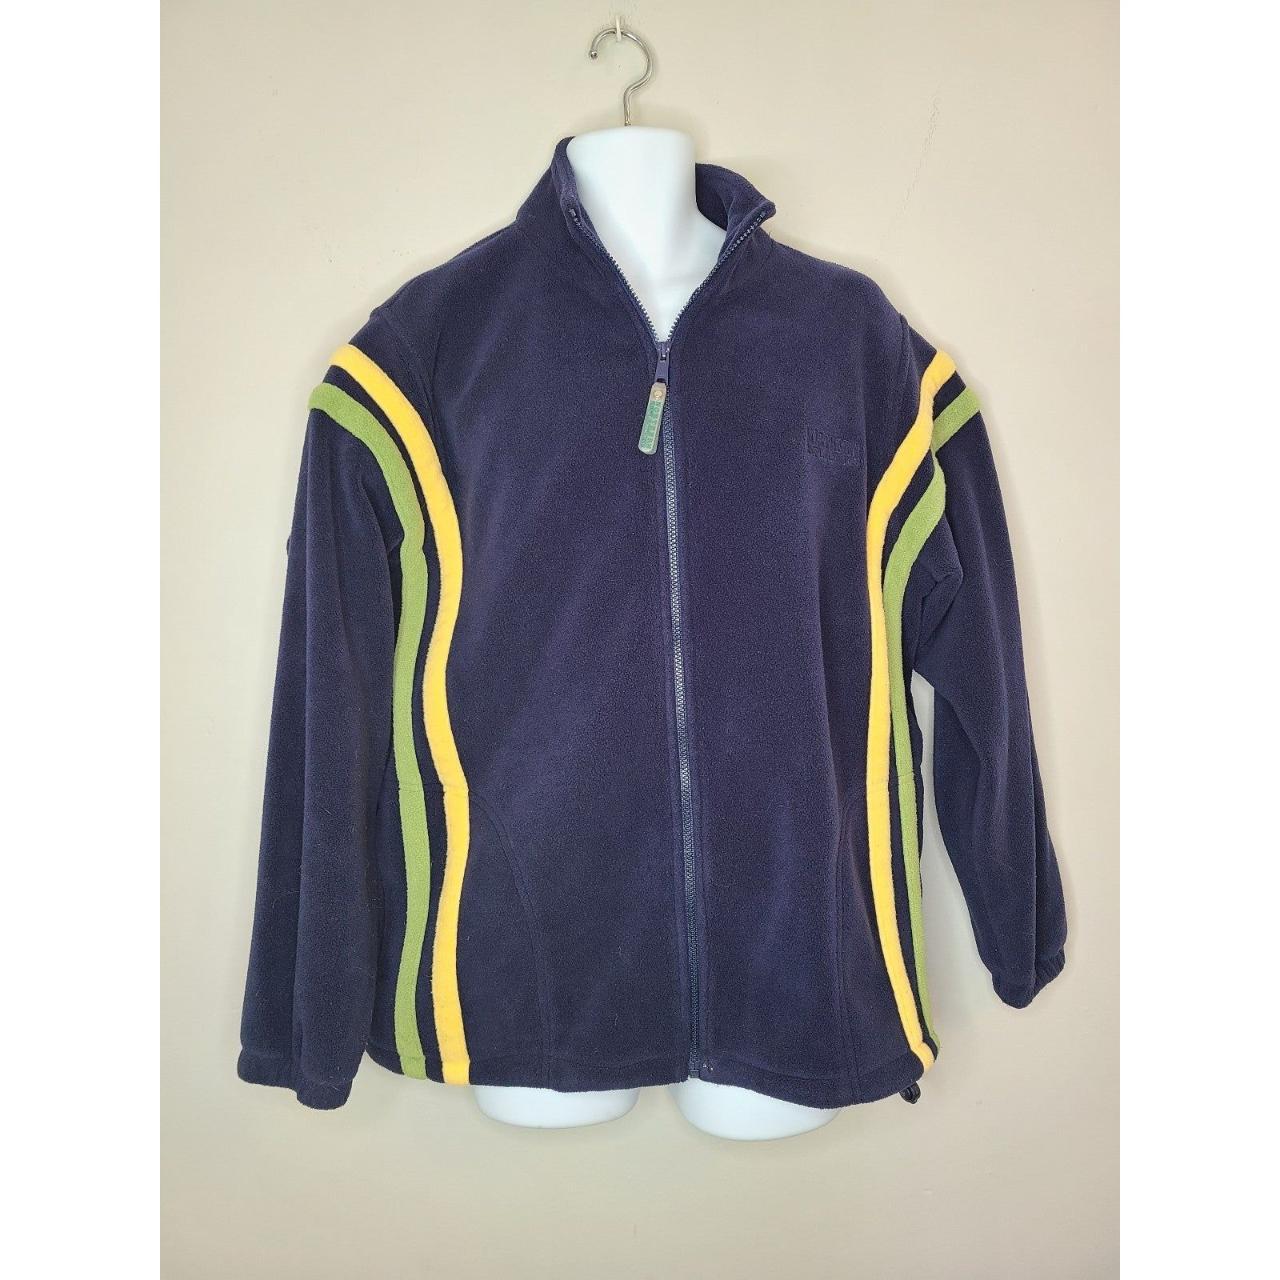 Vintage Fleece Northern Reflections jacket size L.... - Depop